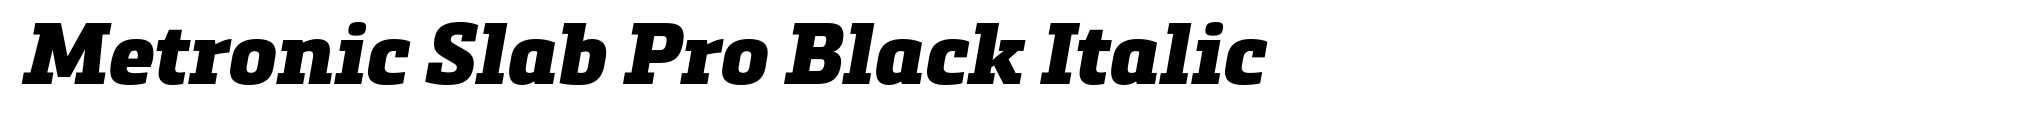 Metronic Slab Pro Black Italic image